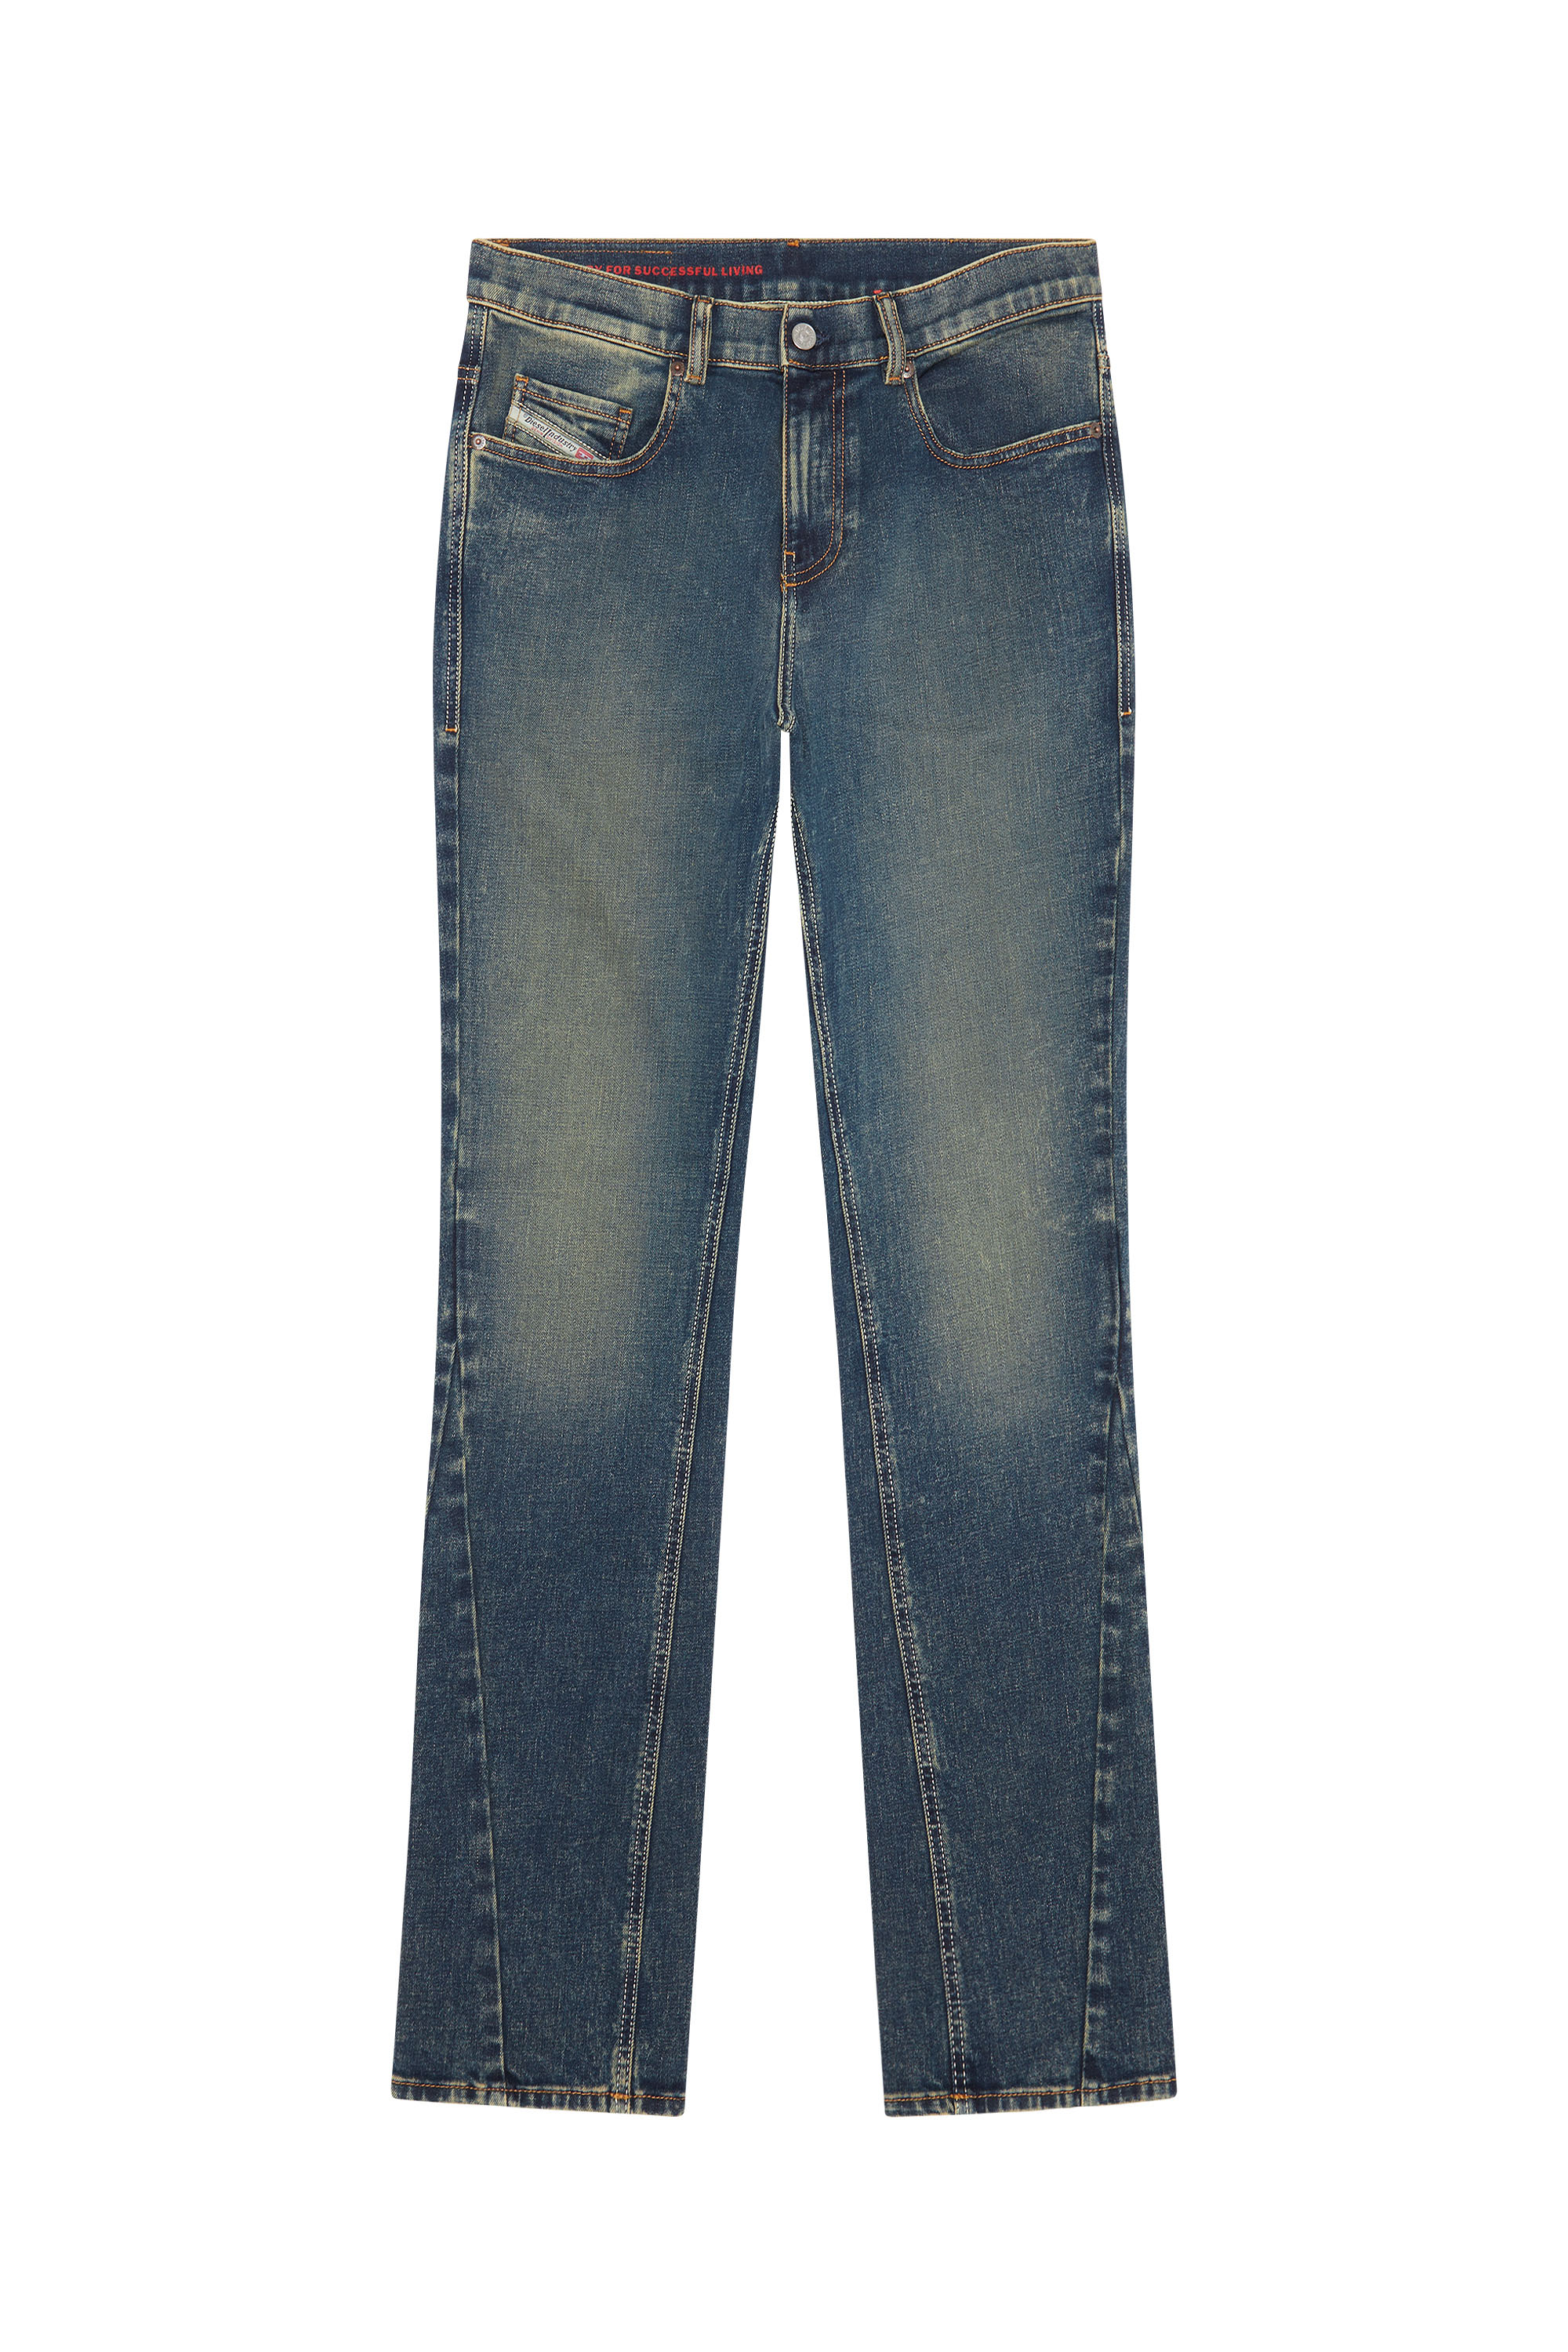 2021 D-VOCS 09B91 Bootcut Jeans, Dunkelblau - Jeans